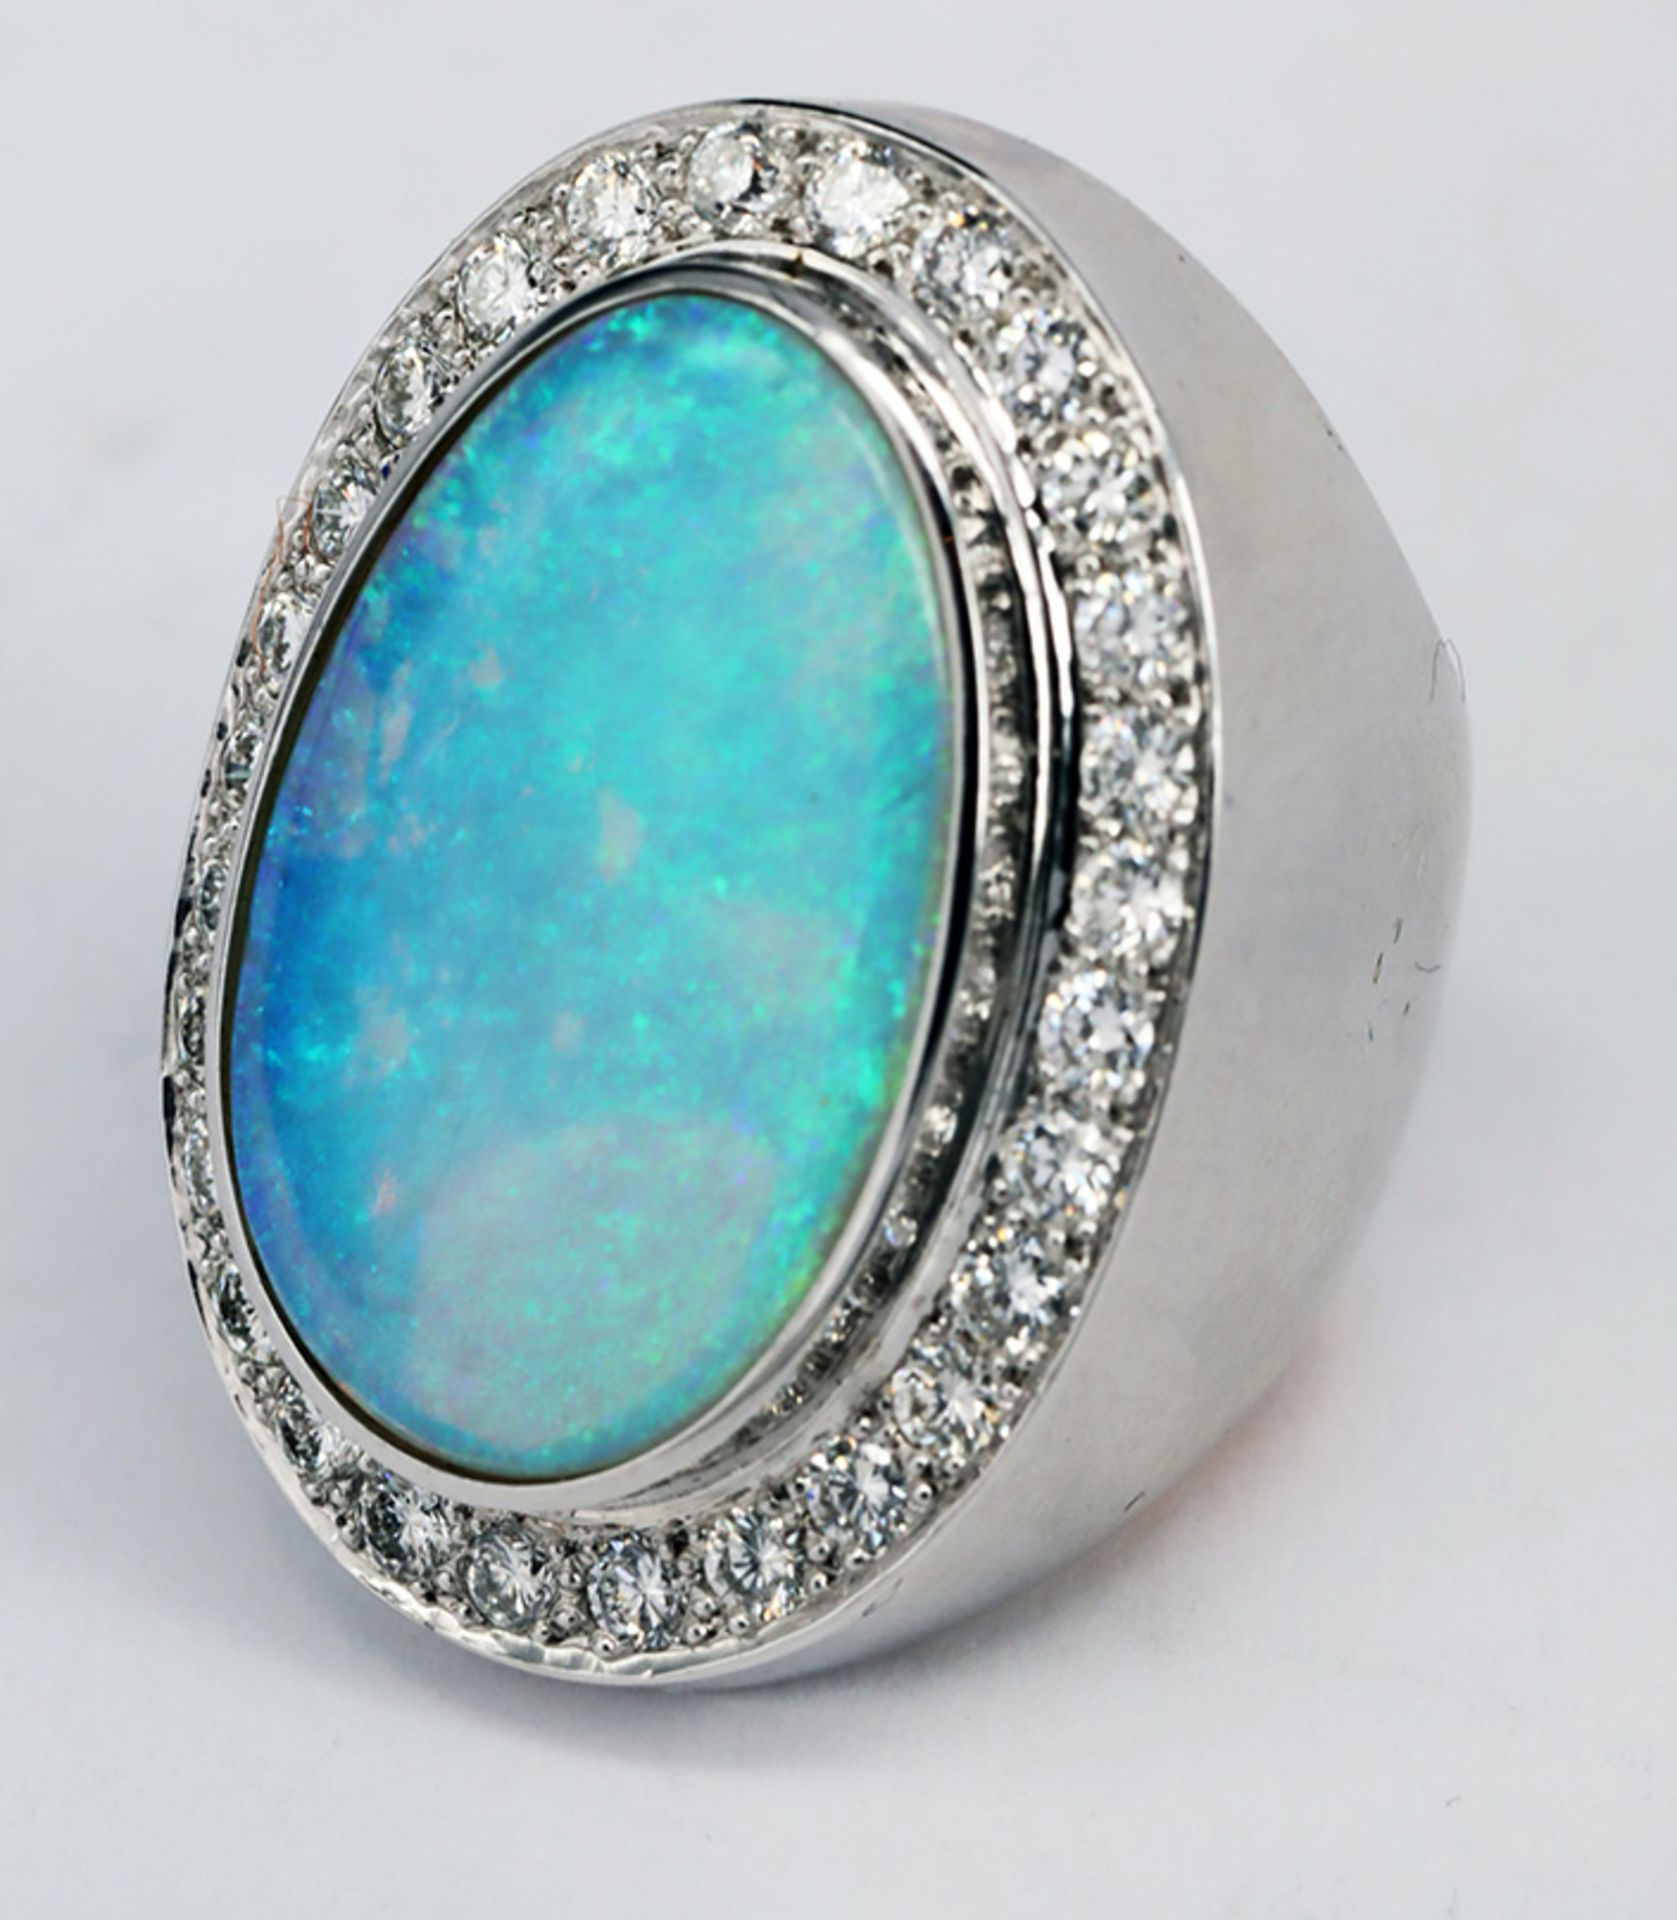 Ring, 750er WG, Handarbeit, mit türkisblauem Opal, 15,5 mm x 24 mm, sowie 28 Brillanten à 0,04 ct, - Image 3 of 6